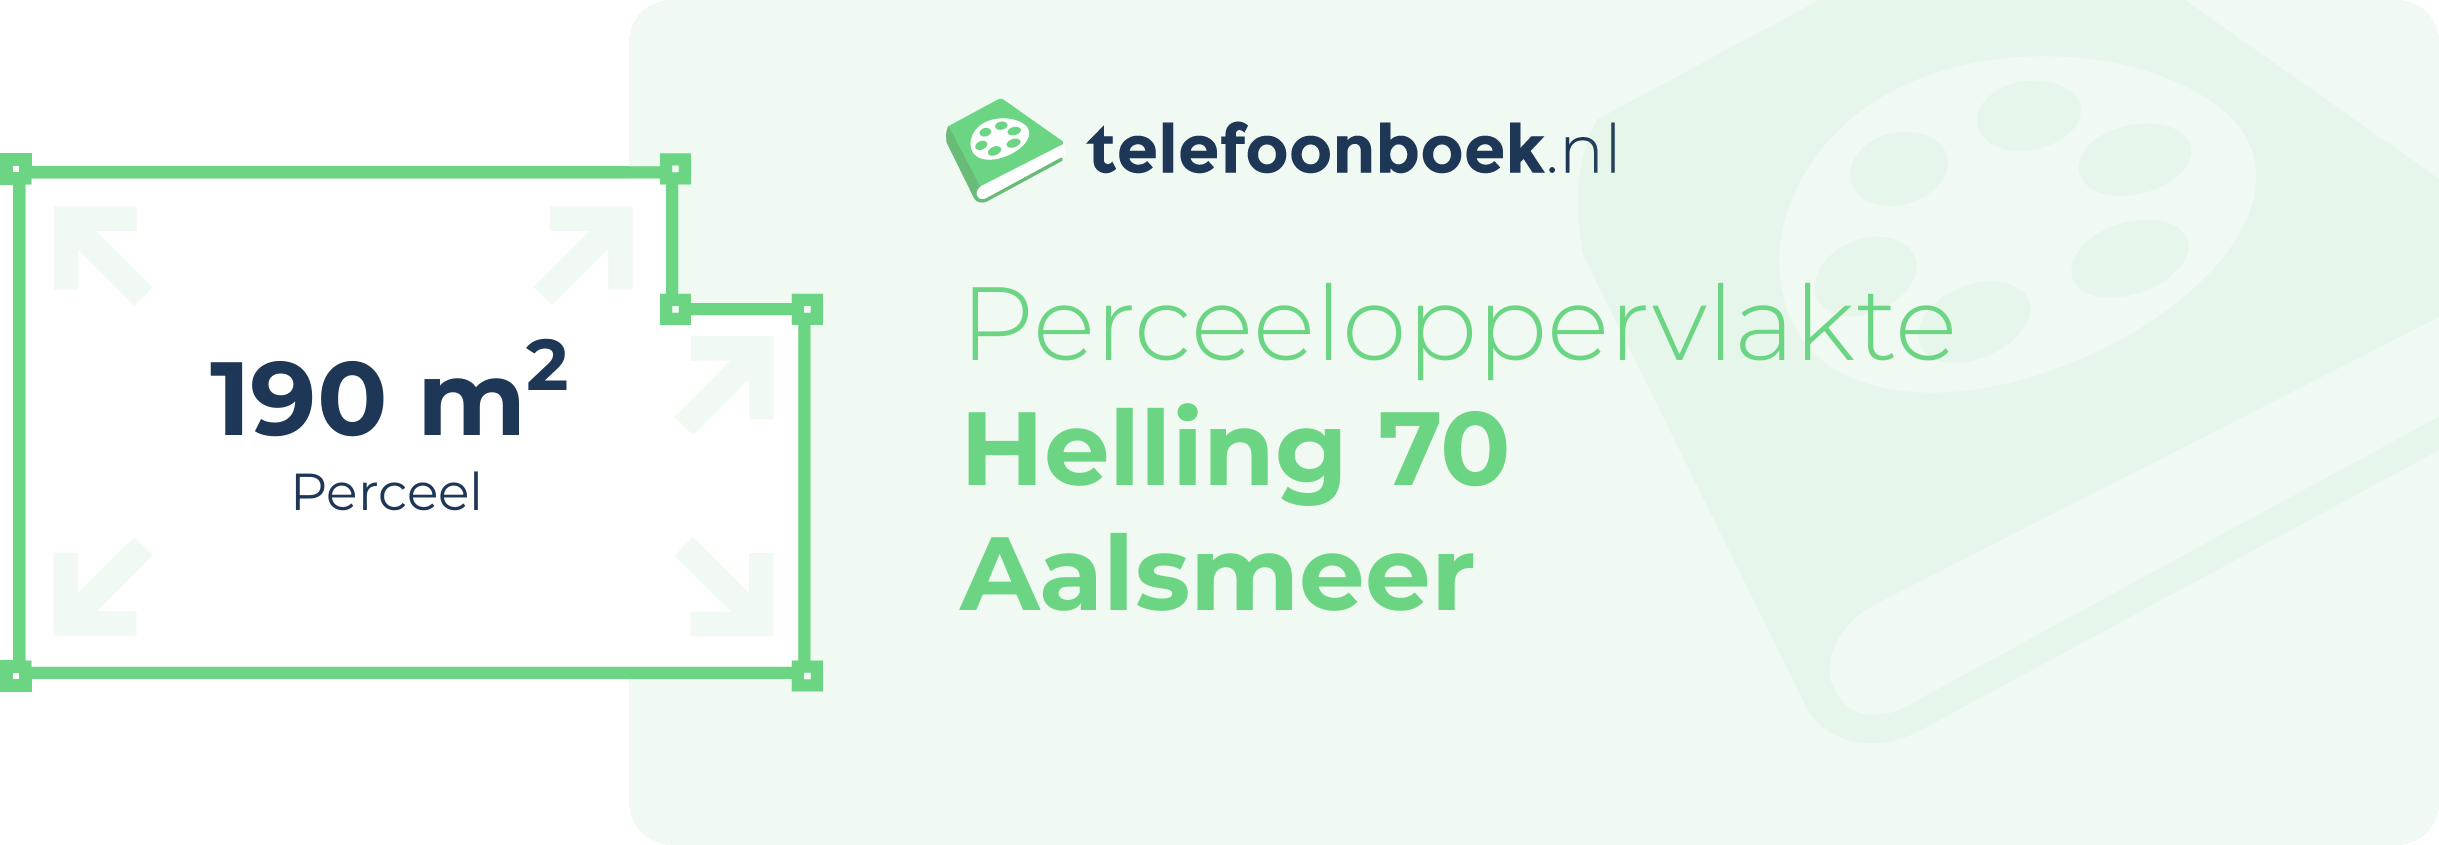 Perceeloppervlakte Helling 70 Aalsmeer